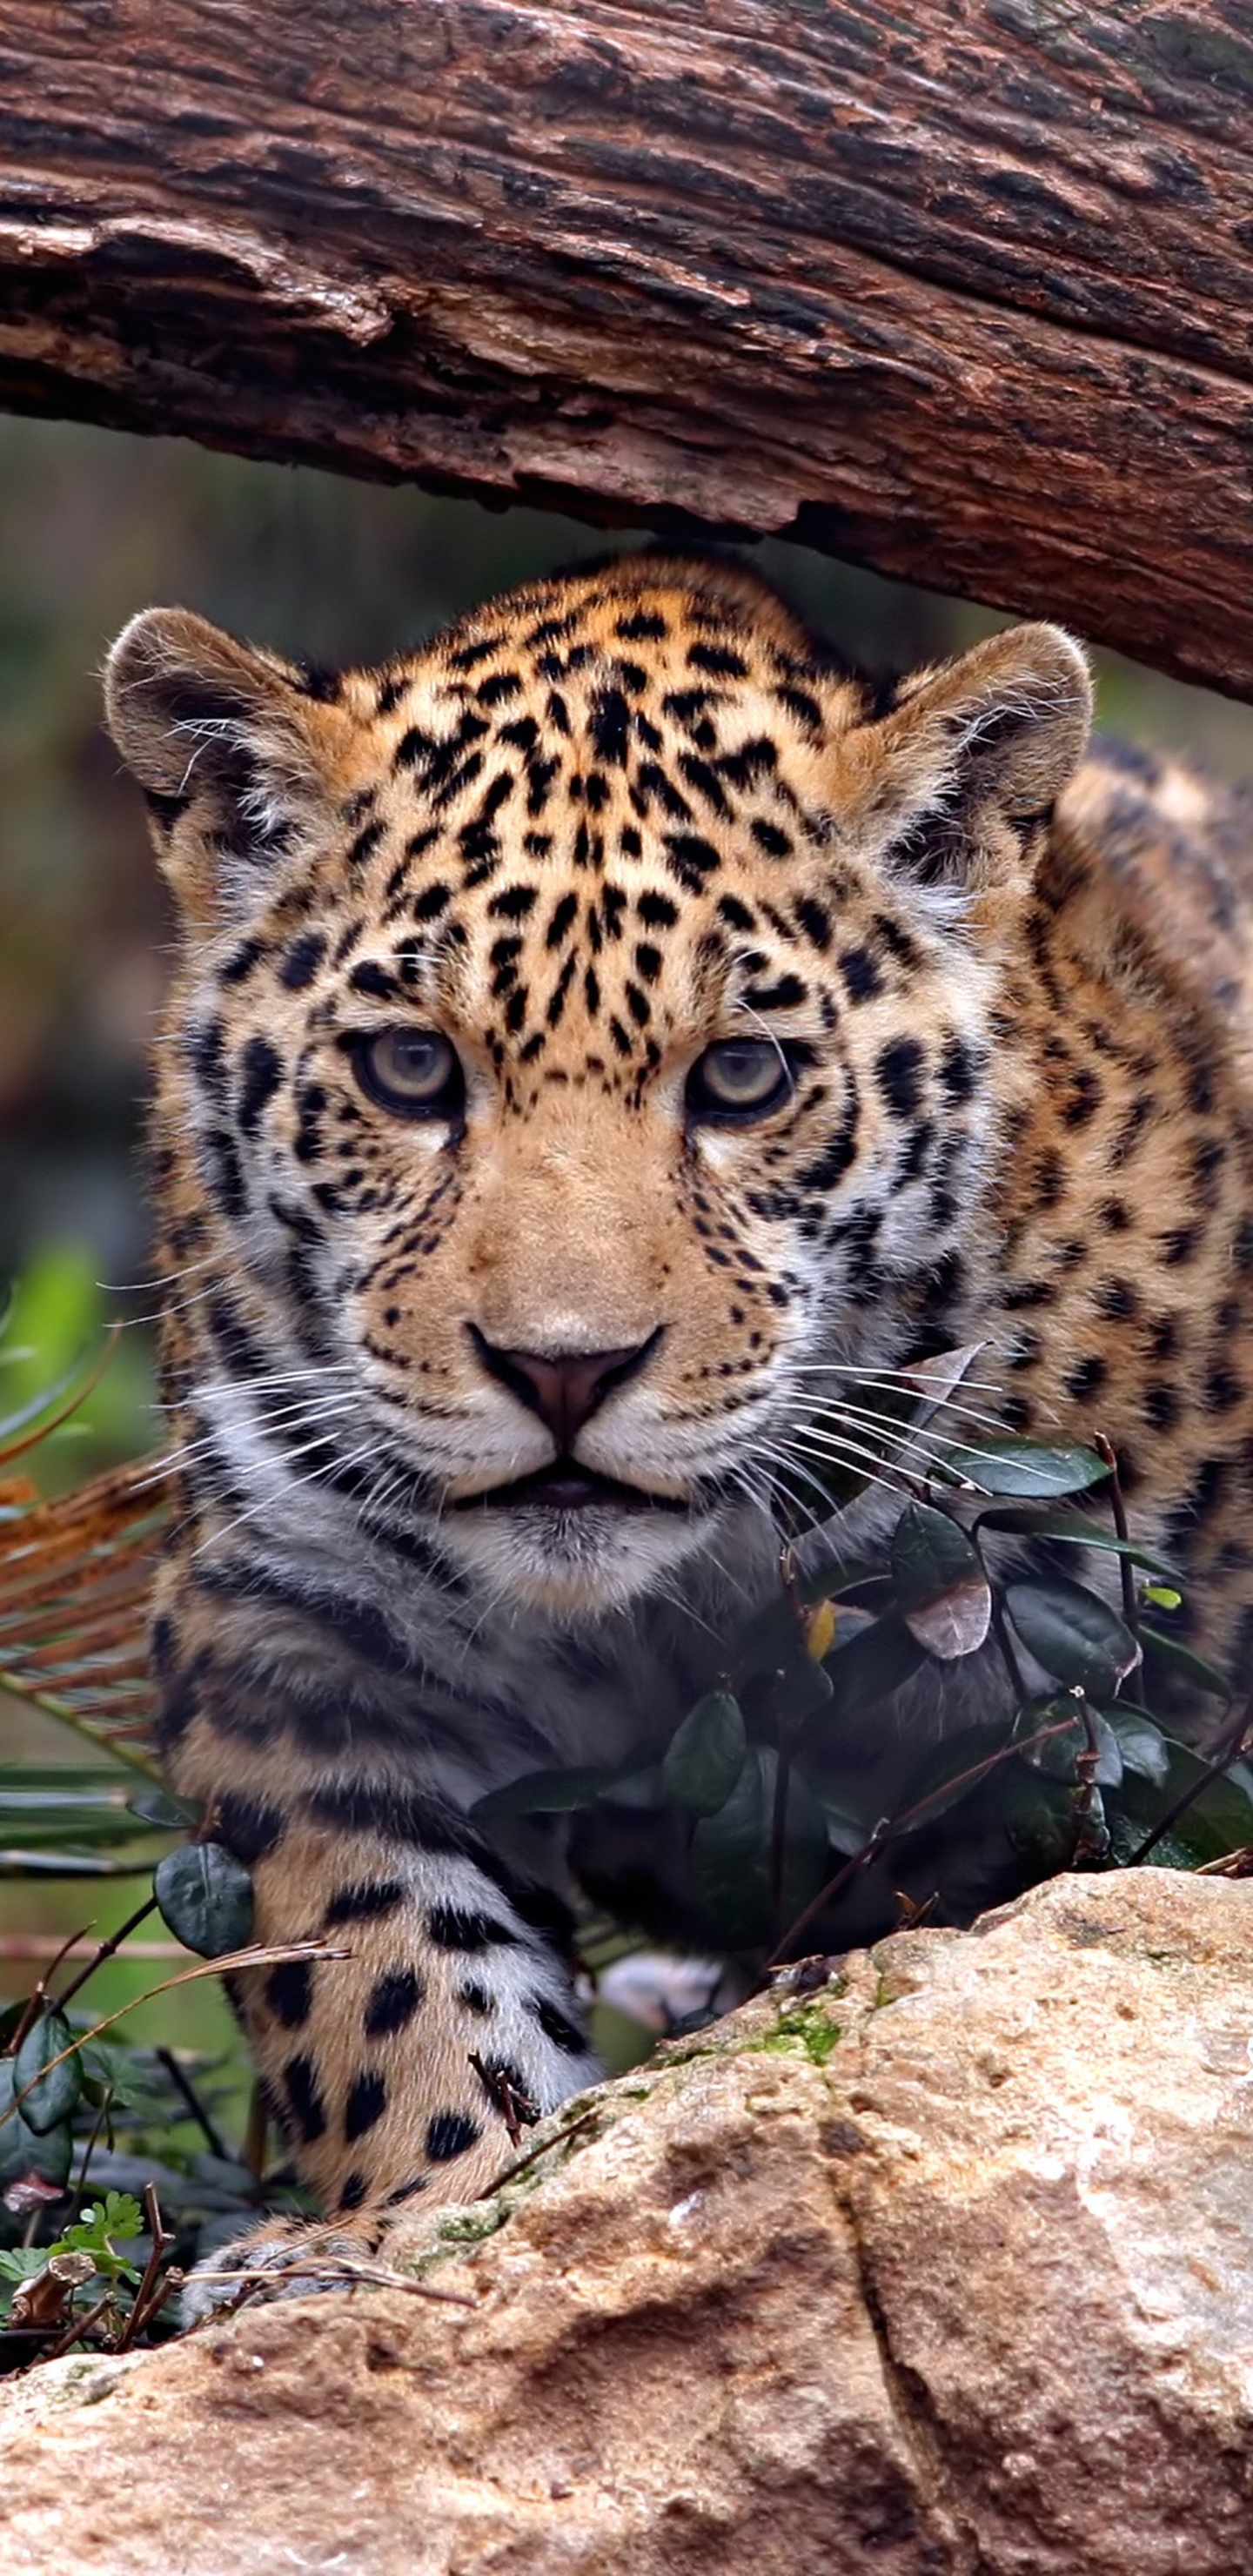 Скачать обои бесплатно Животные, Леопард, Ягуар, Кошки картинка на рабочий стол ПК